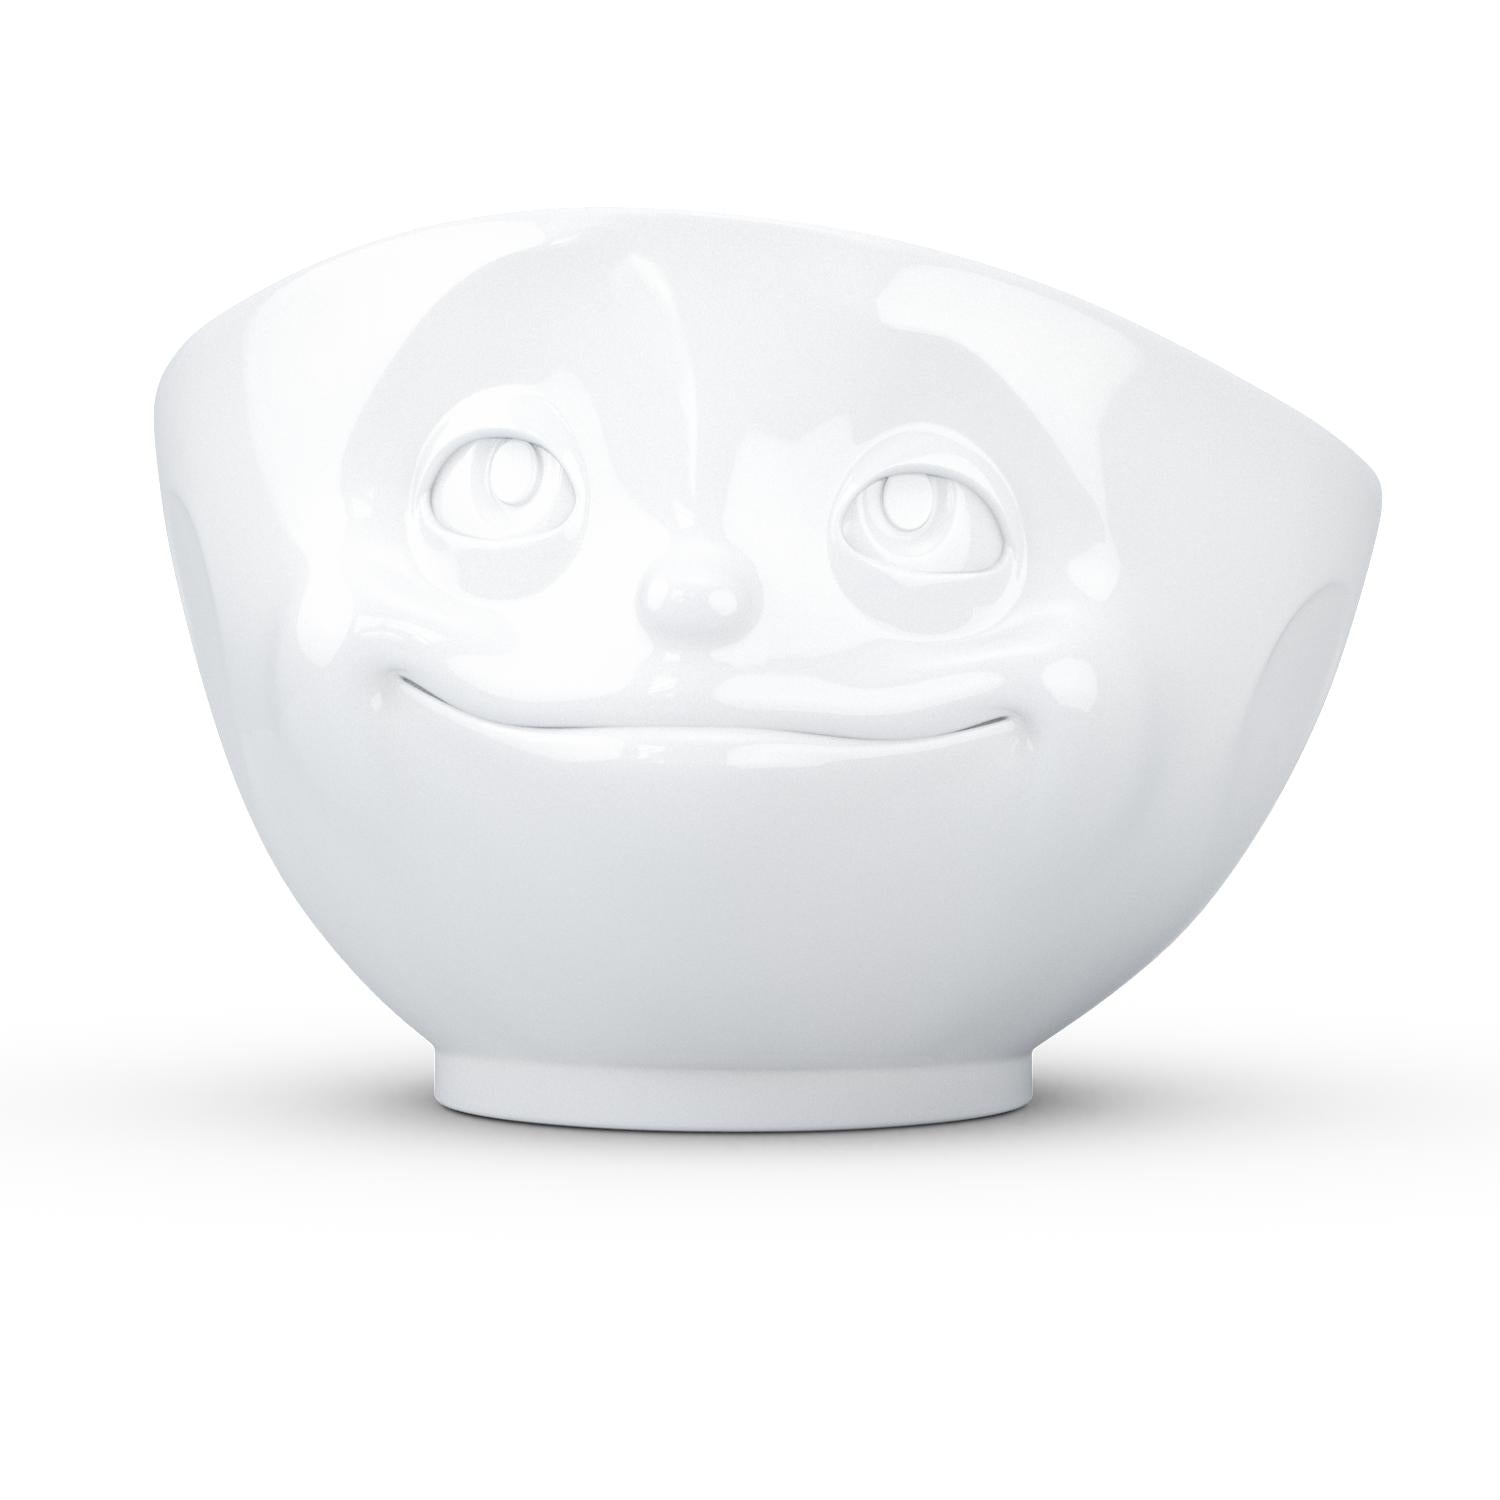 Inademen Ondergedompeld Verenigen TASSEN Porcelain Bowl, Dreamy Face Edition, 16 oz. White – FIFTYEIGHT  Products